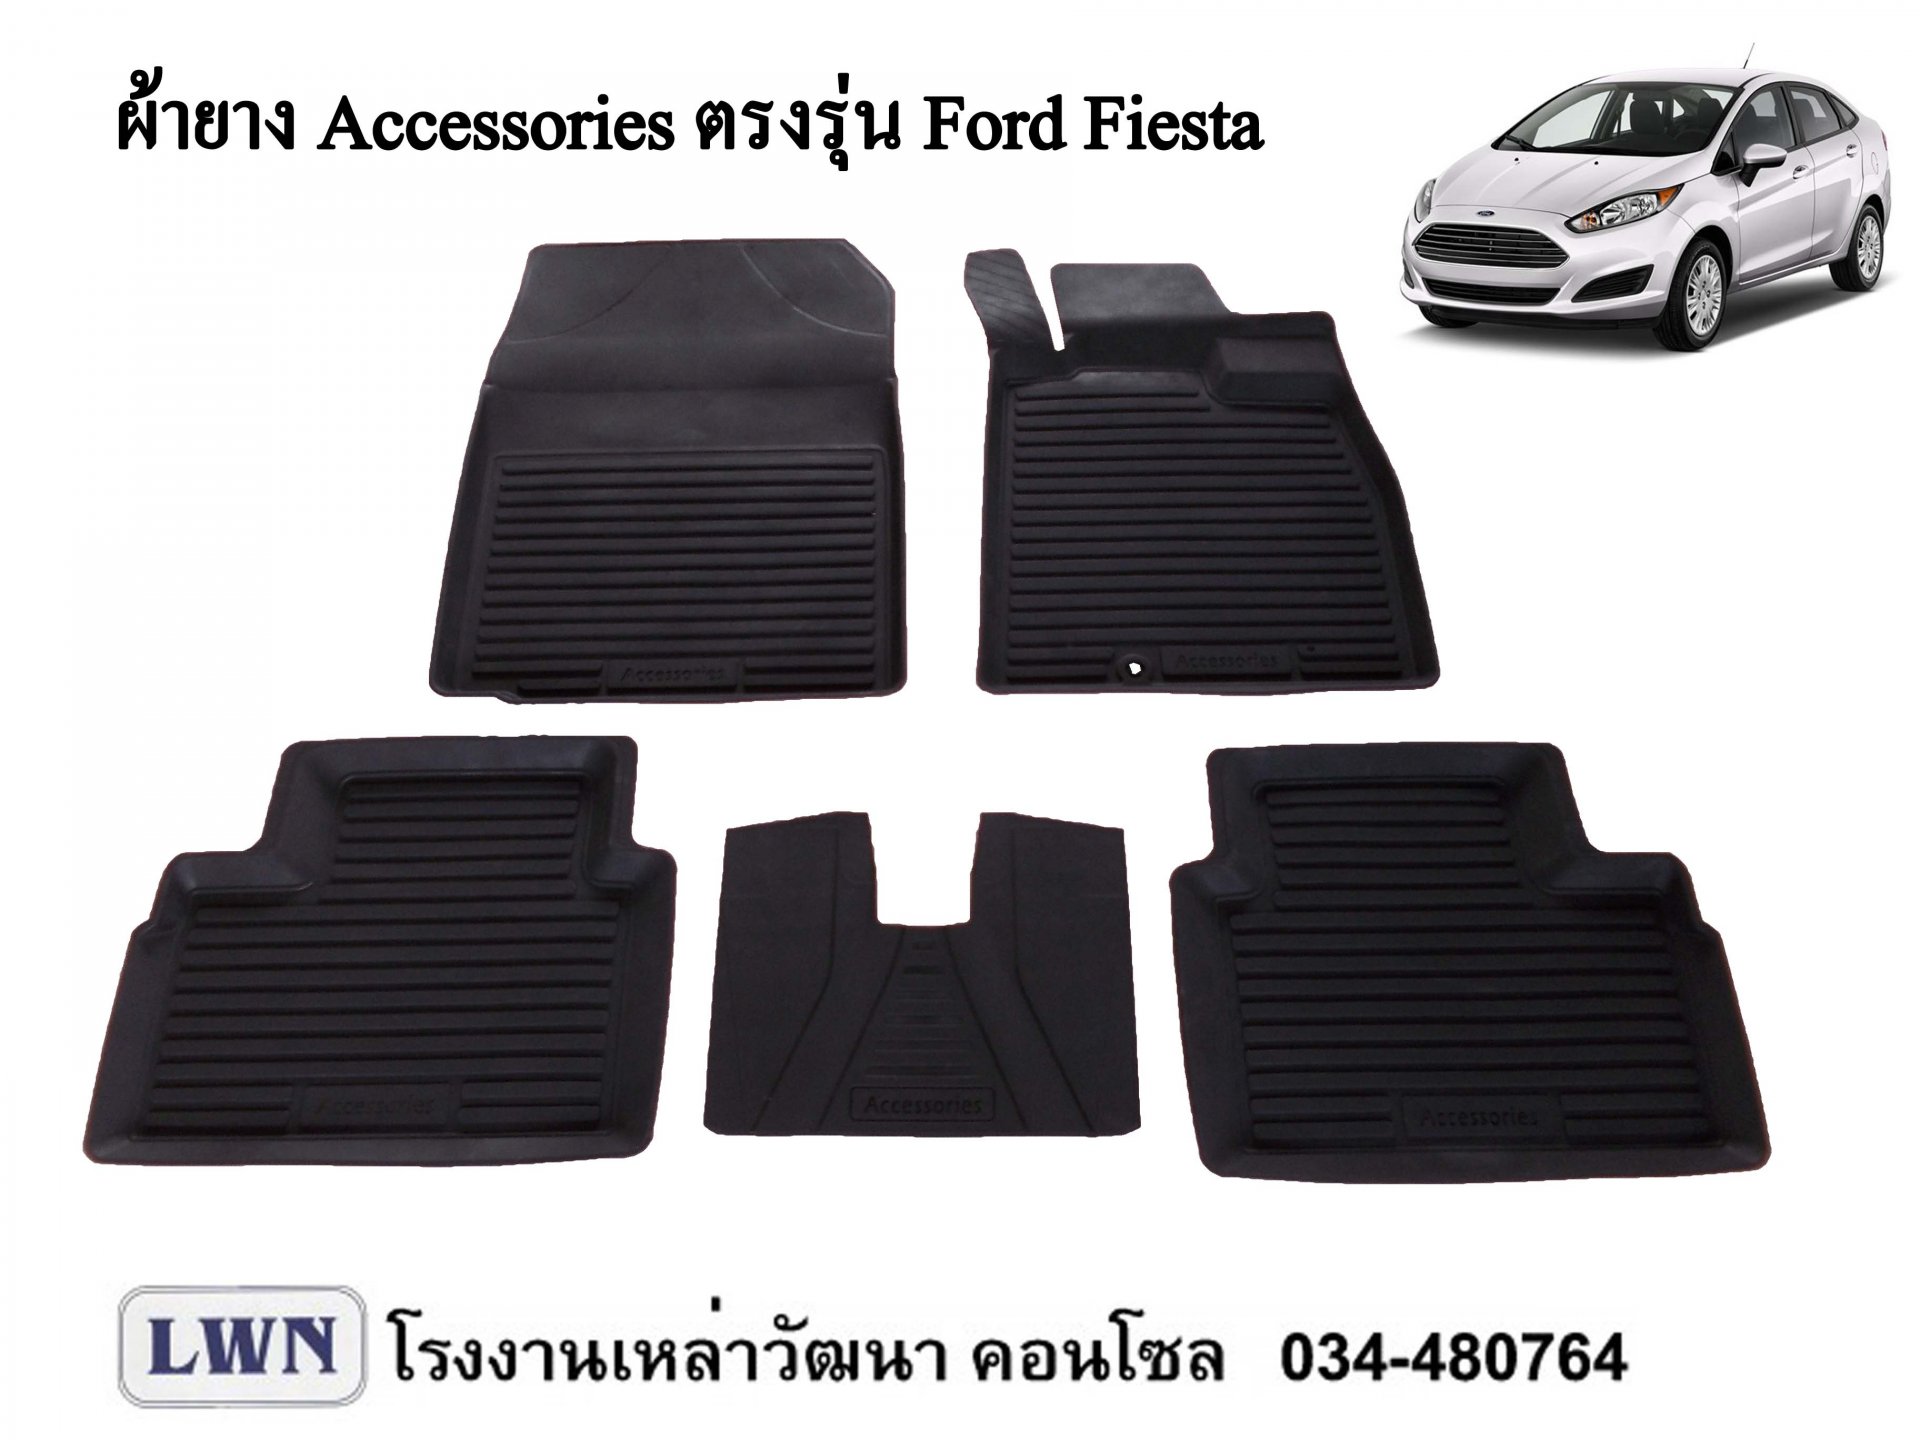 ACC-Ford Fiesta